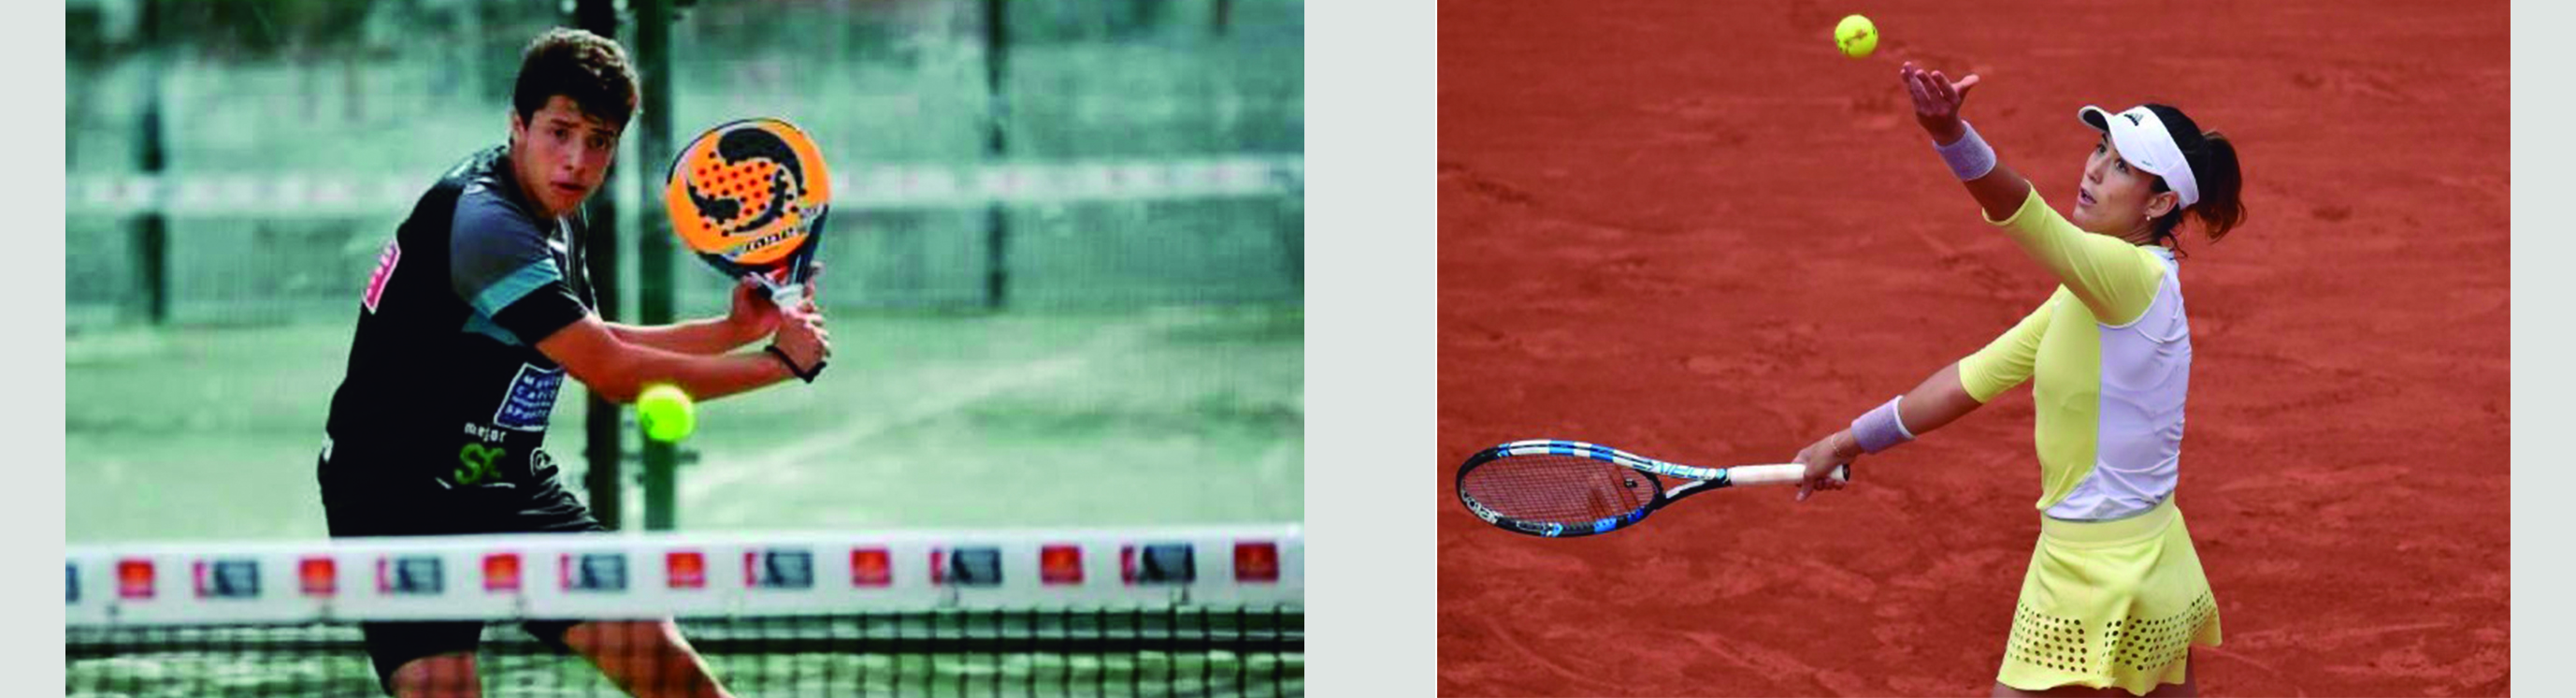 Diferencias entre el tenis y el pádel servicio Diferencias entre el Tenis y el Pádel. Las 5 más importantes.